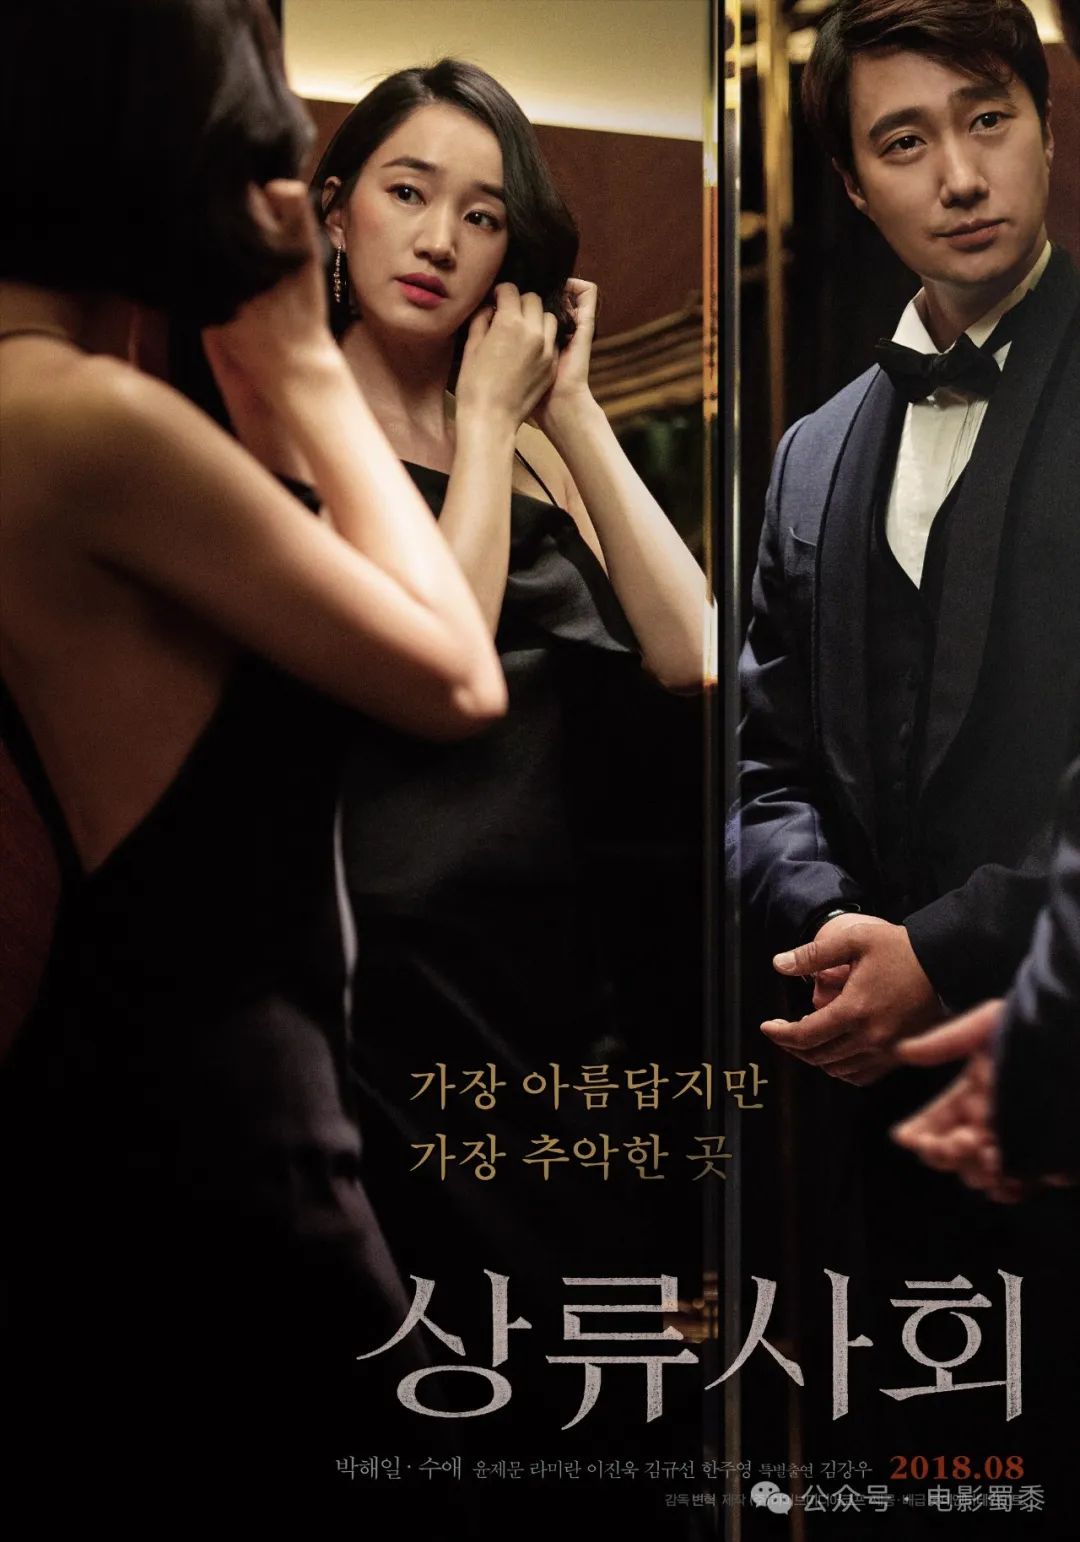 5部被禁播的高分韩国电影，超大尺度引争议！配图-电影推荐